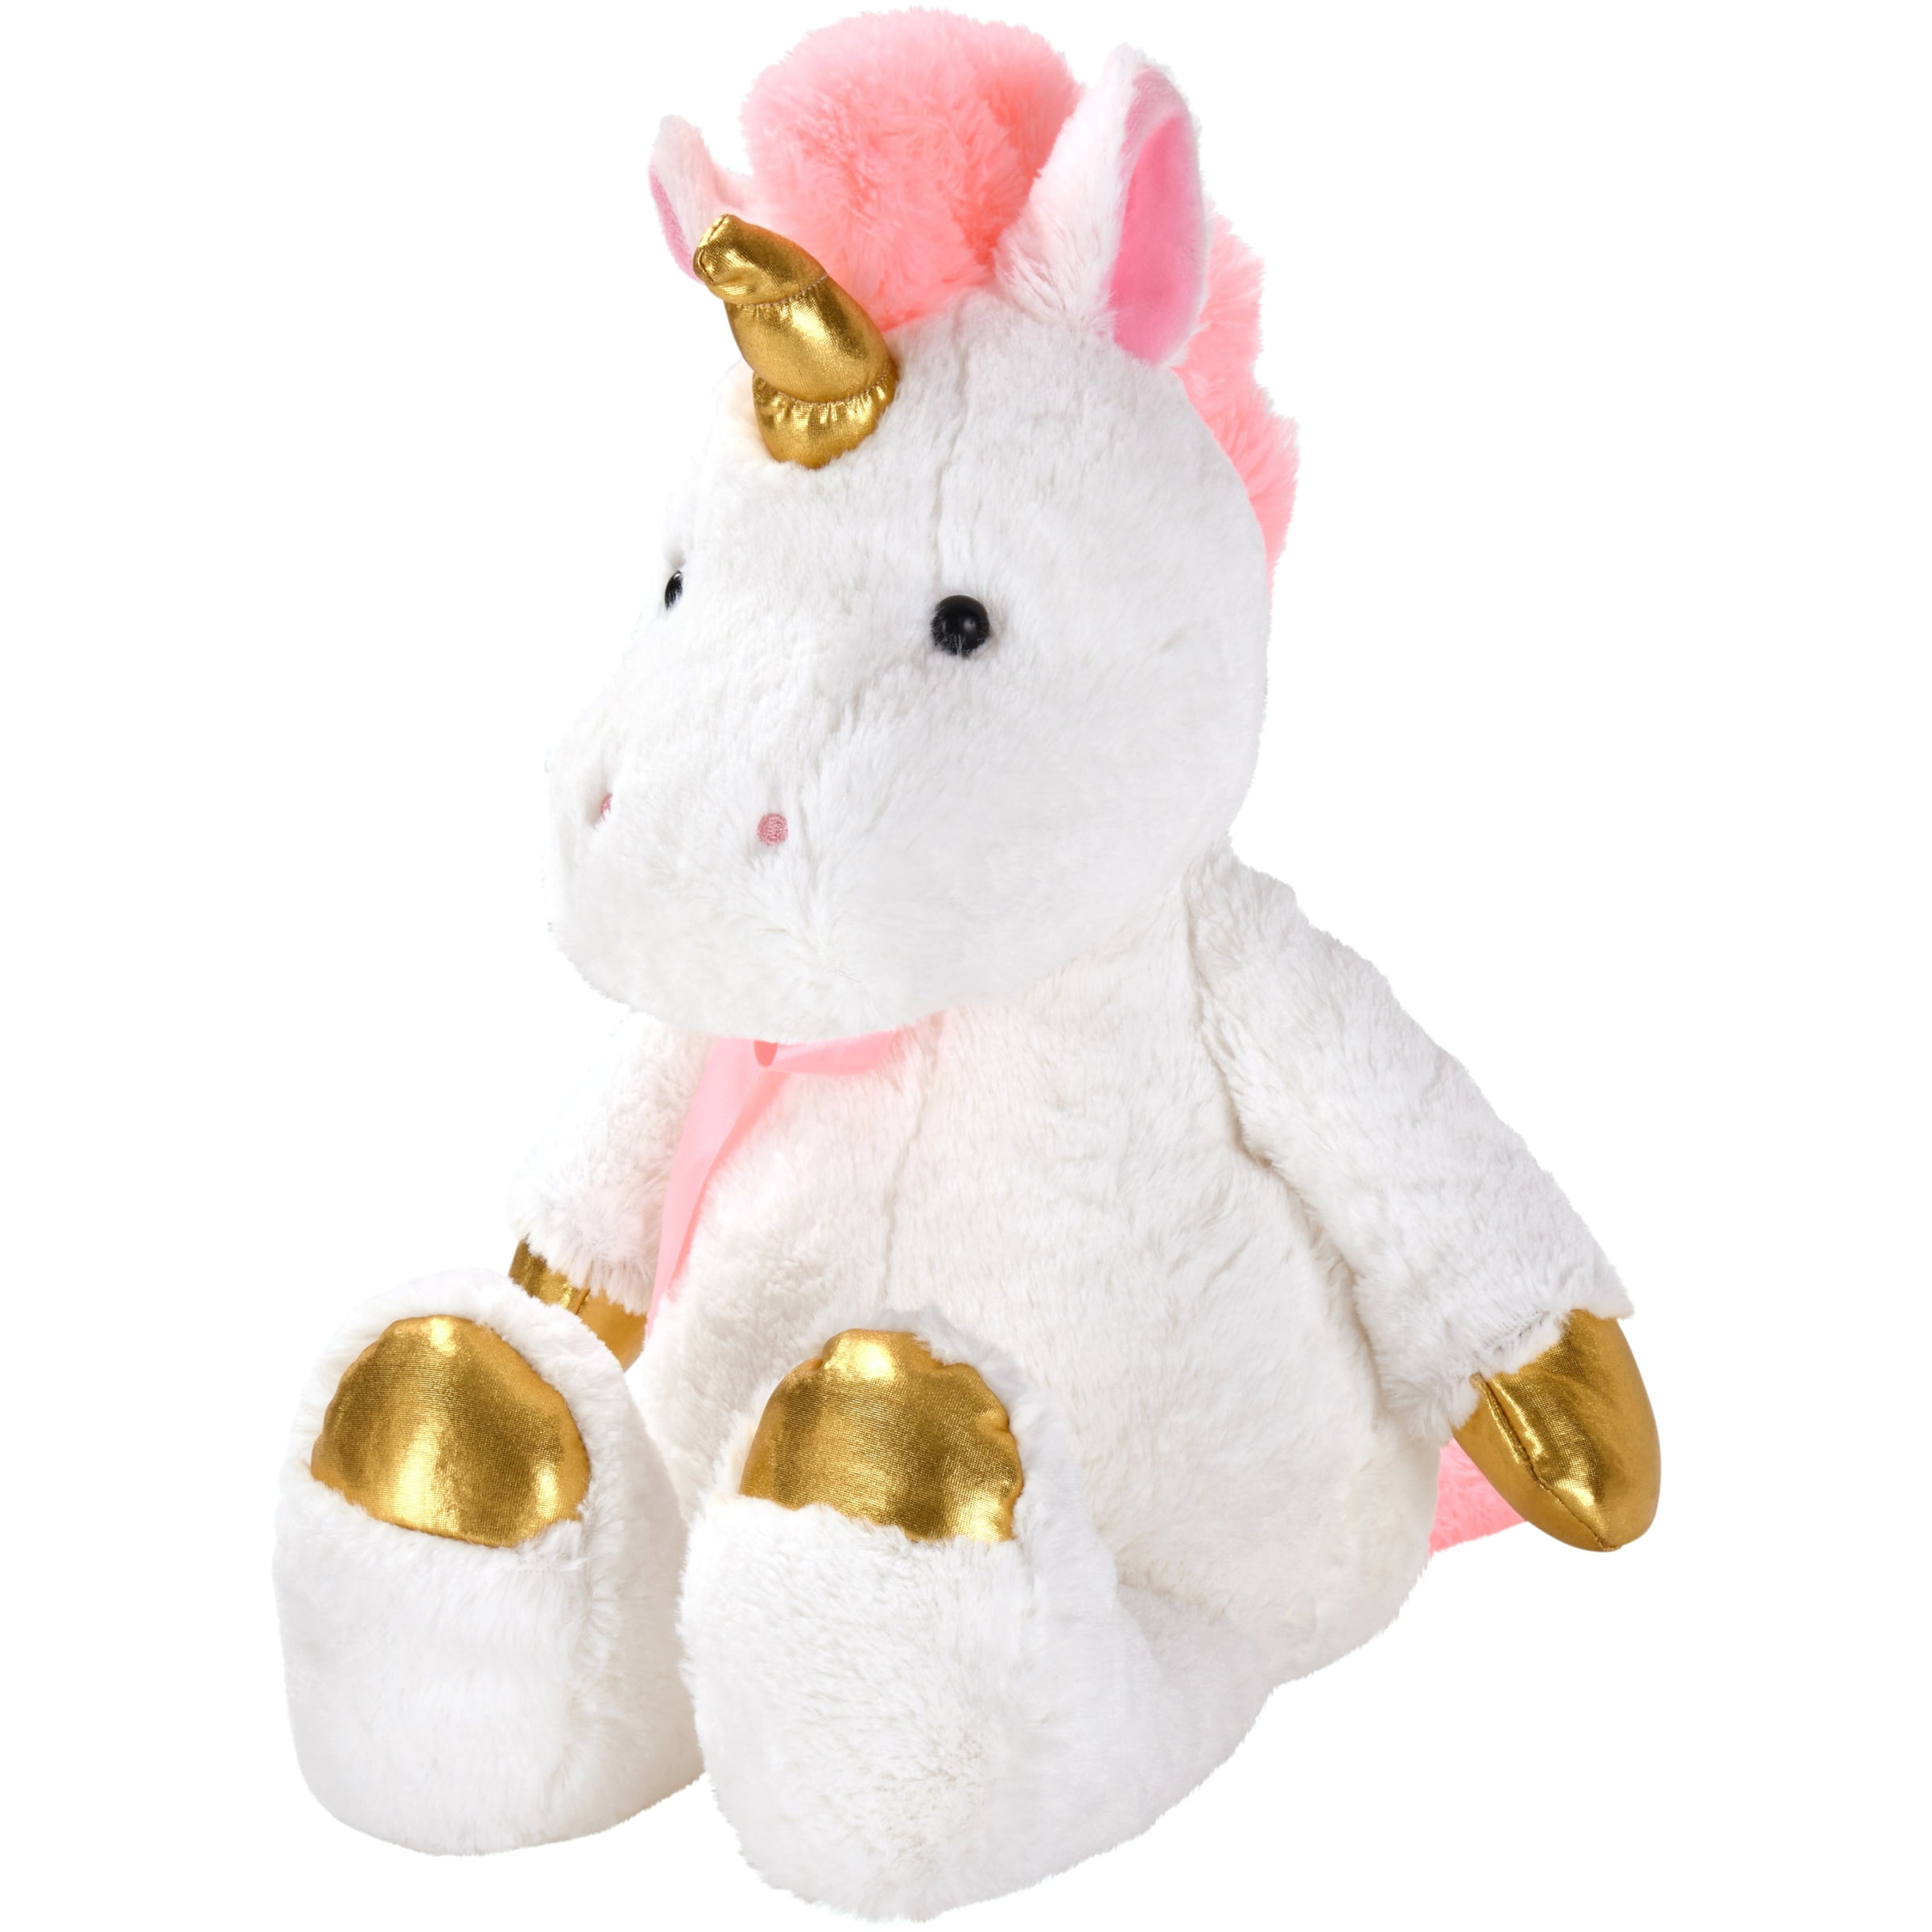 stuffed unicorns at walmart